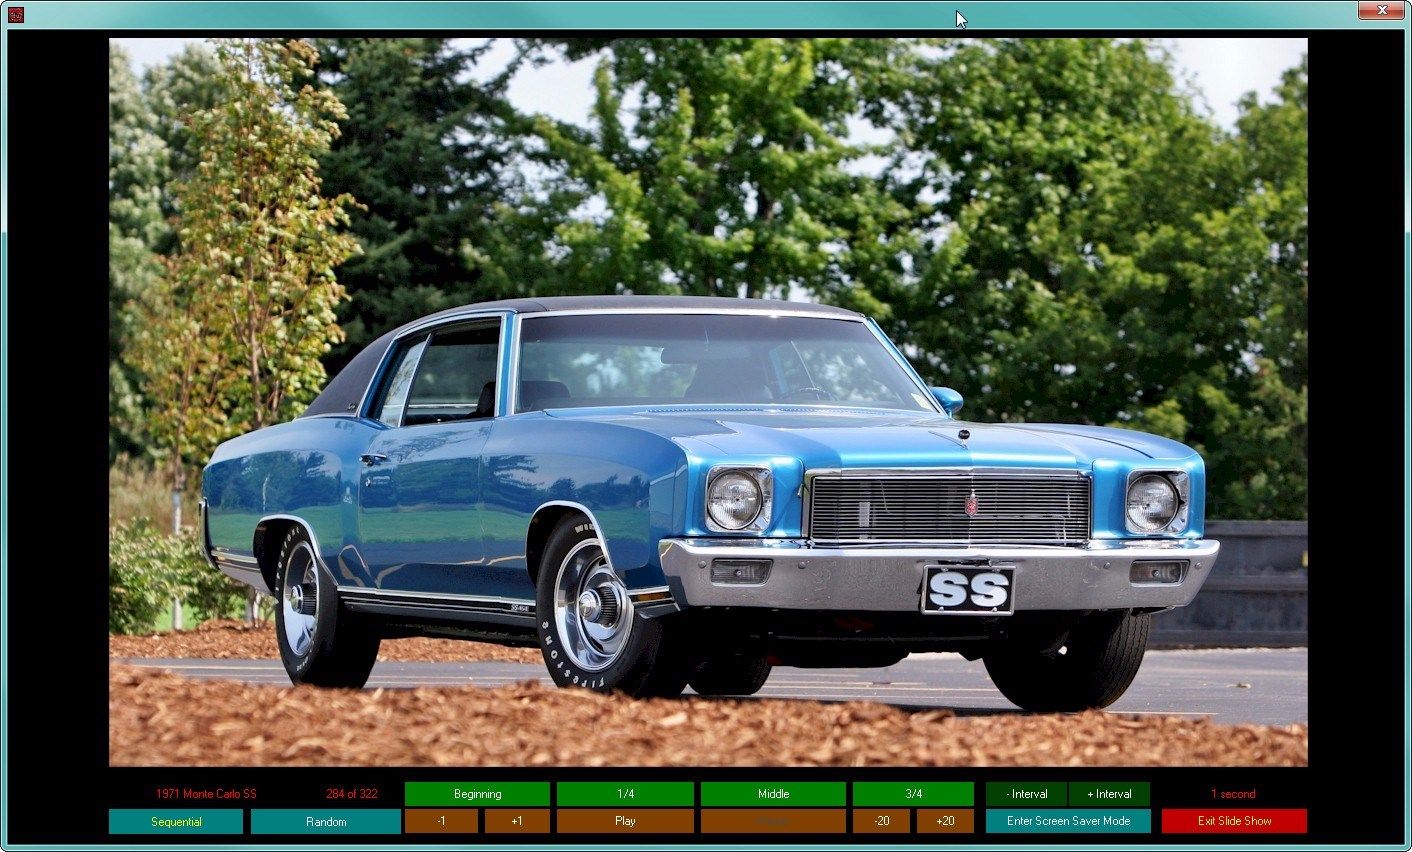 Chevrolet Super Sports 1961-1973